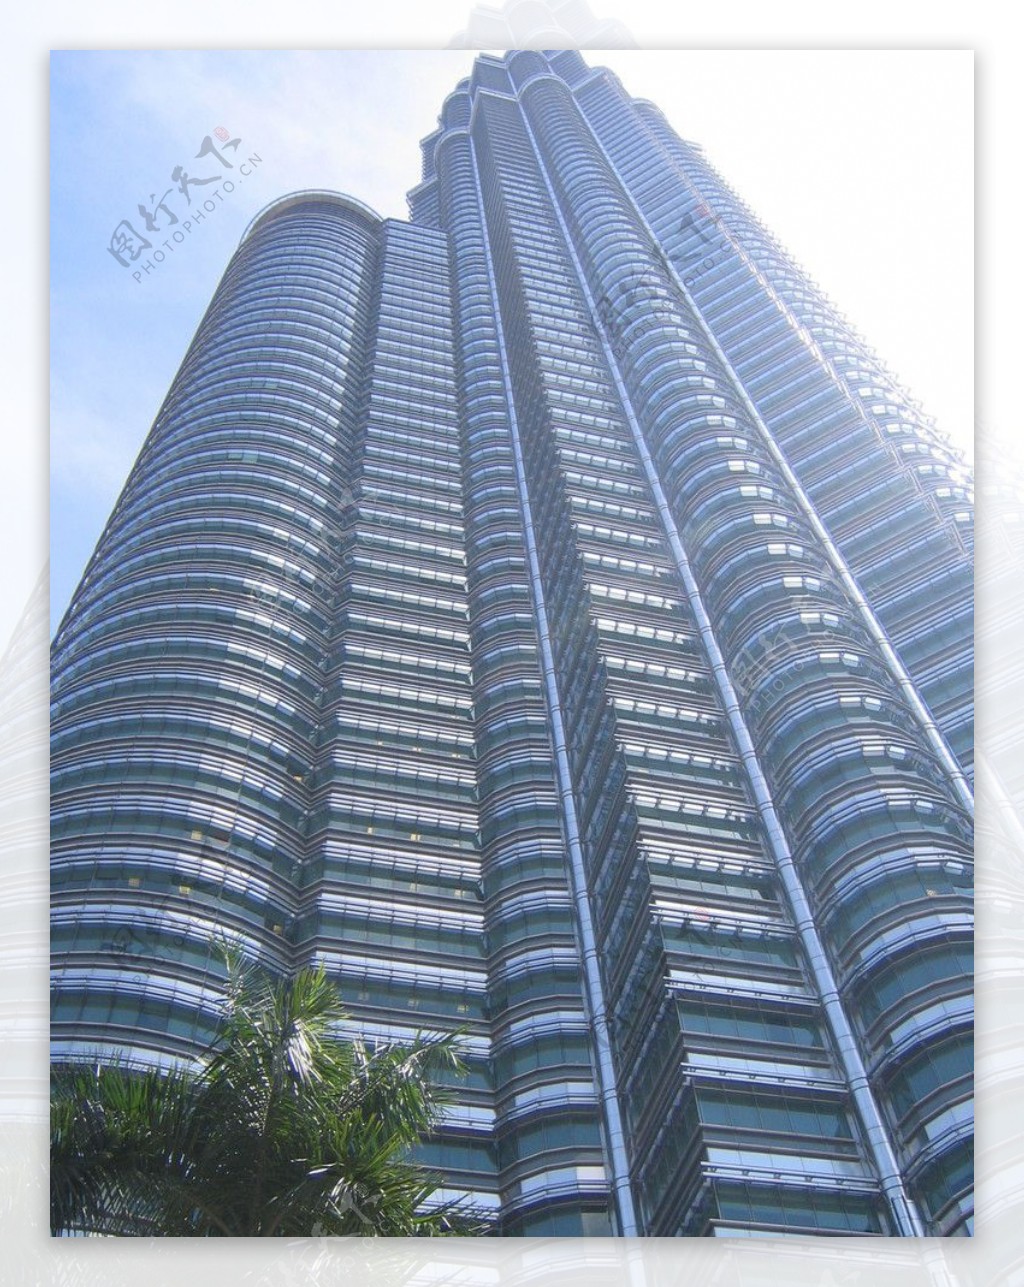 吉隆坡大厦图片